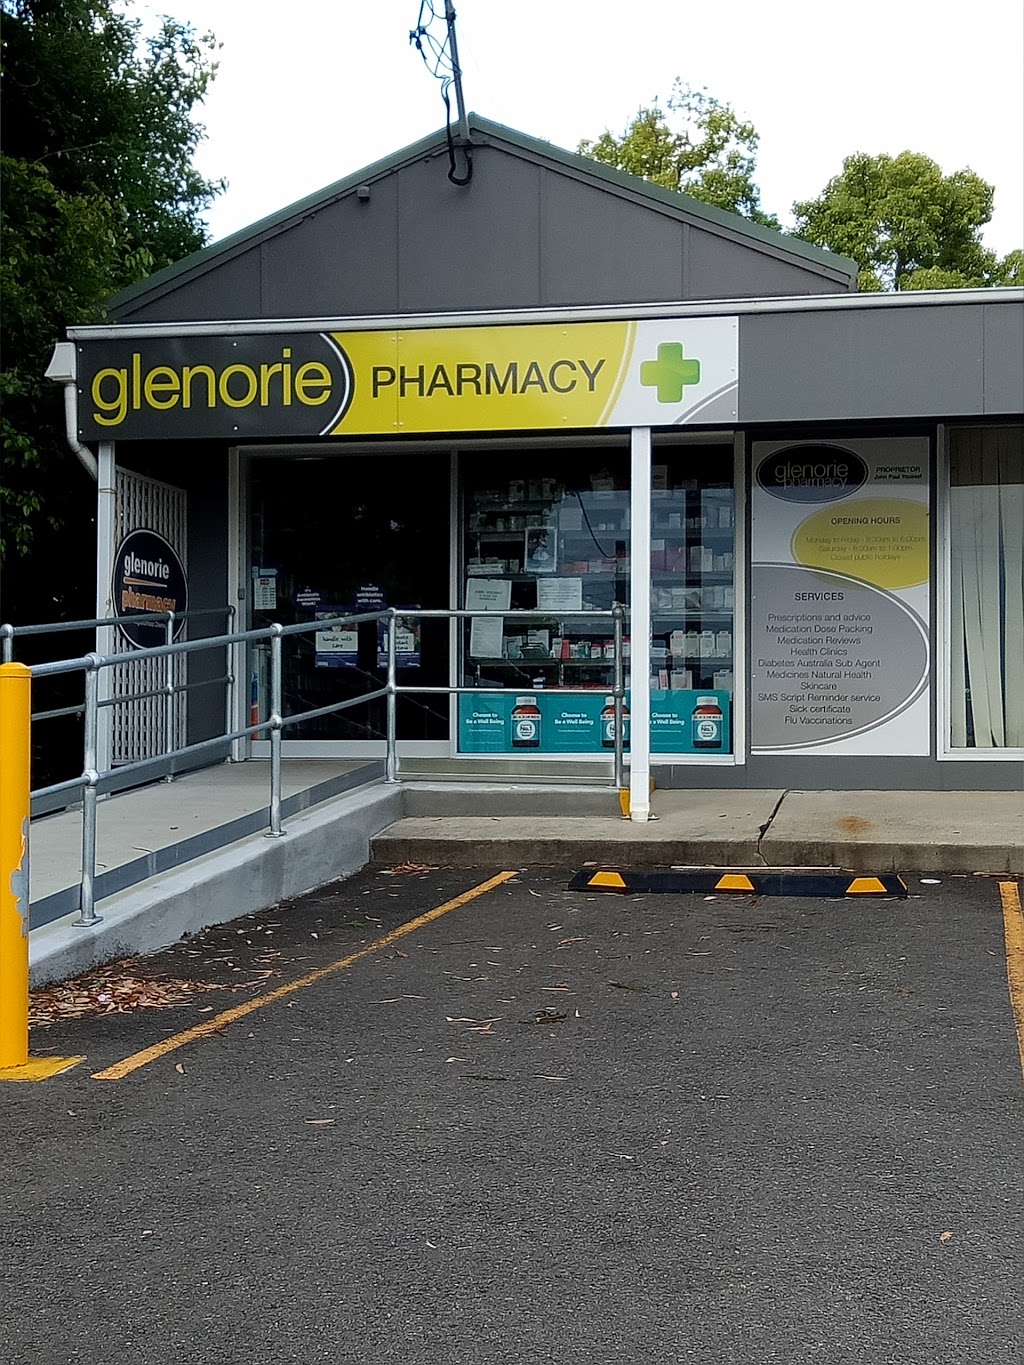 Glenorie Pharmacy | pharmacy | 3/926 Old Northern Rd, Glenorie NSW 2157, Australia | 0296521679 OR +61 2 9652 1679